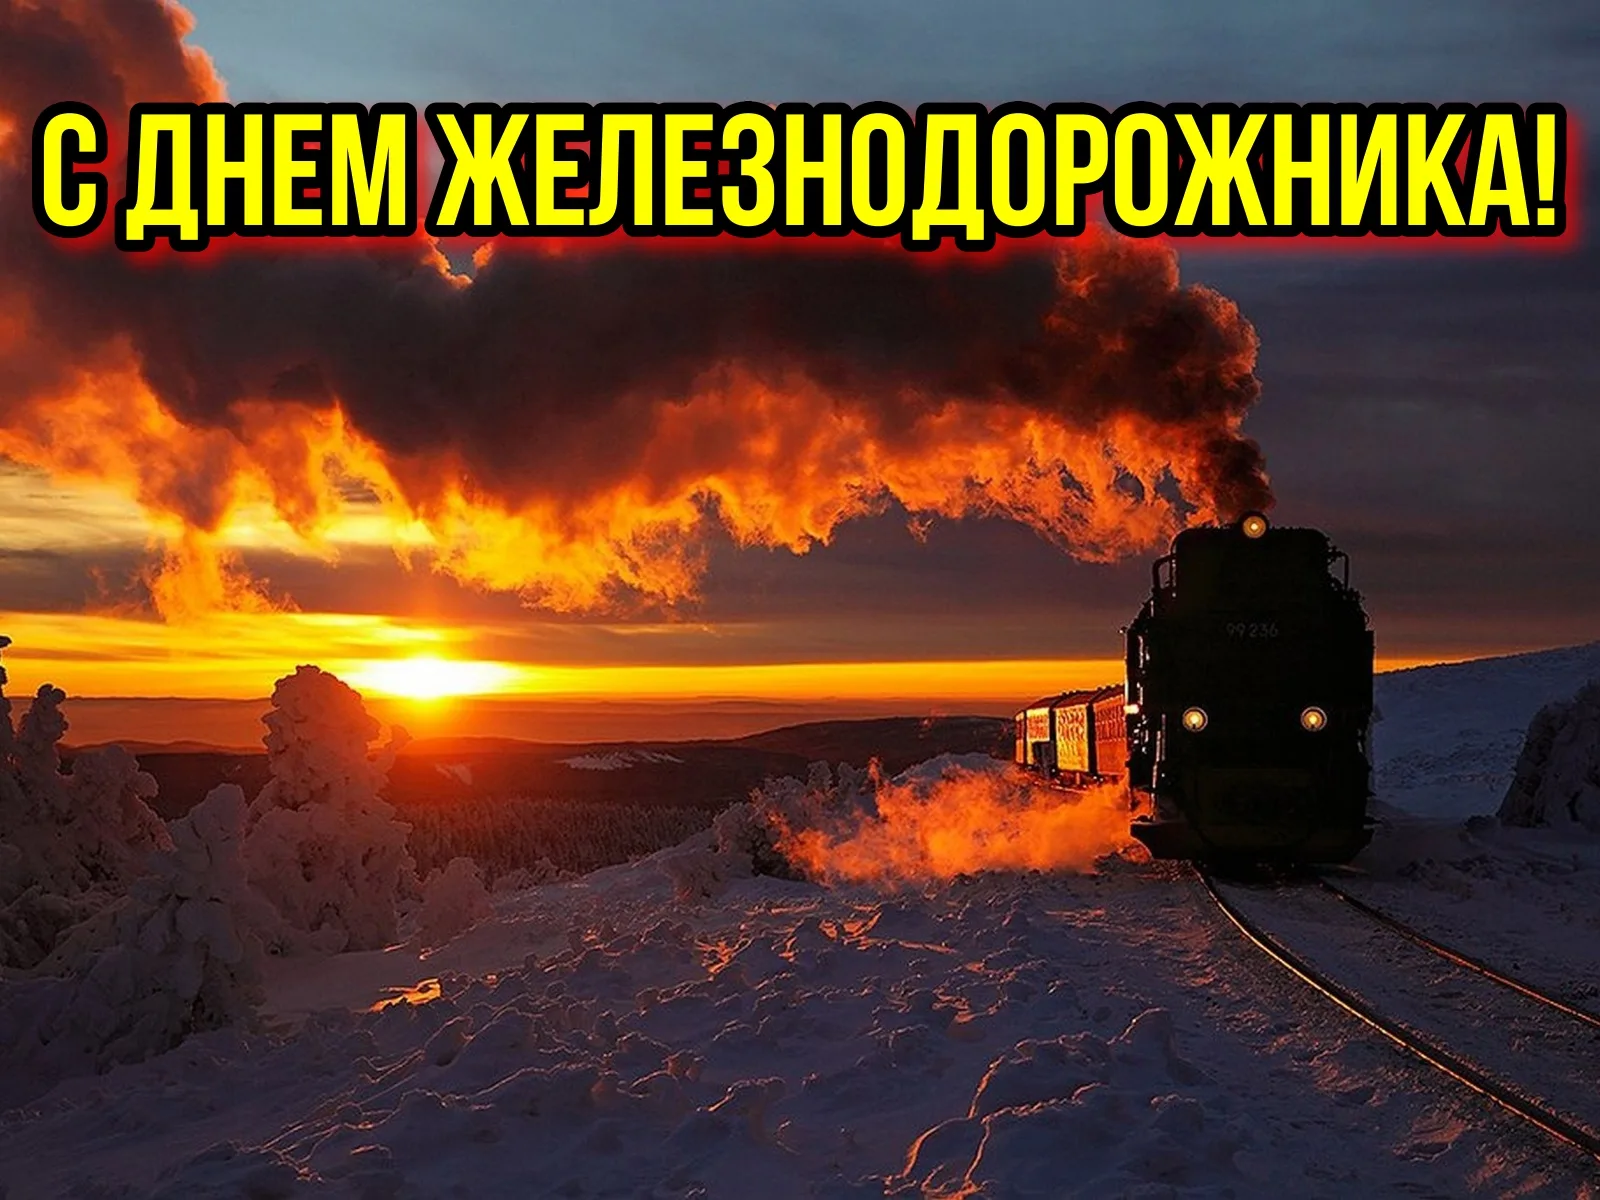 Фото Поздравление с днем железнодорожника Украины #20